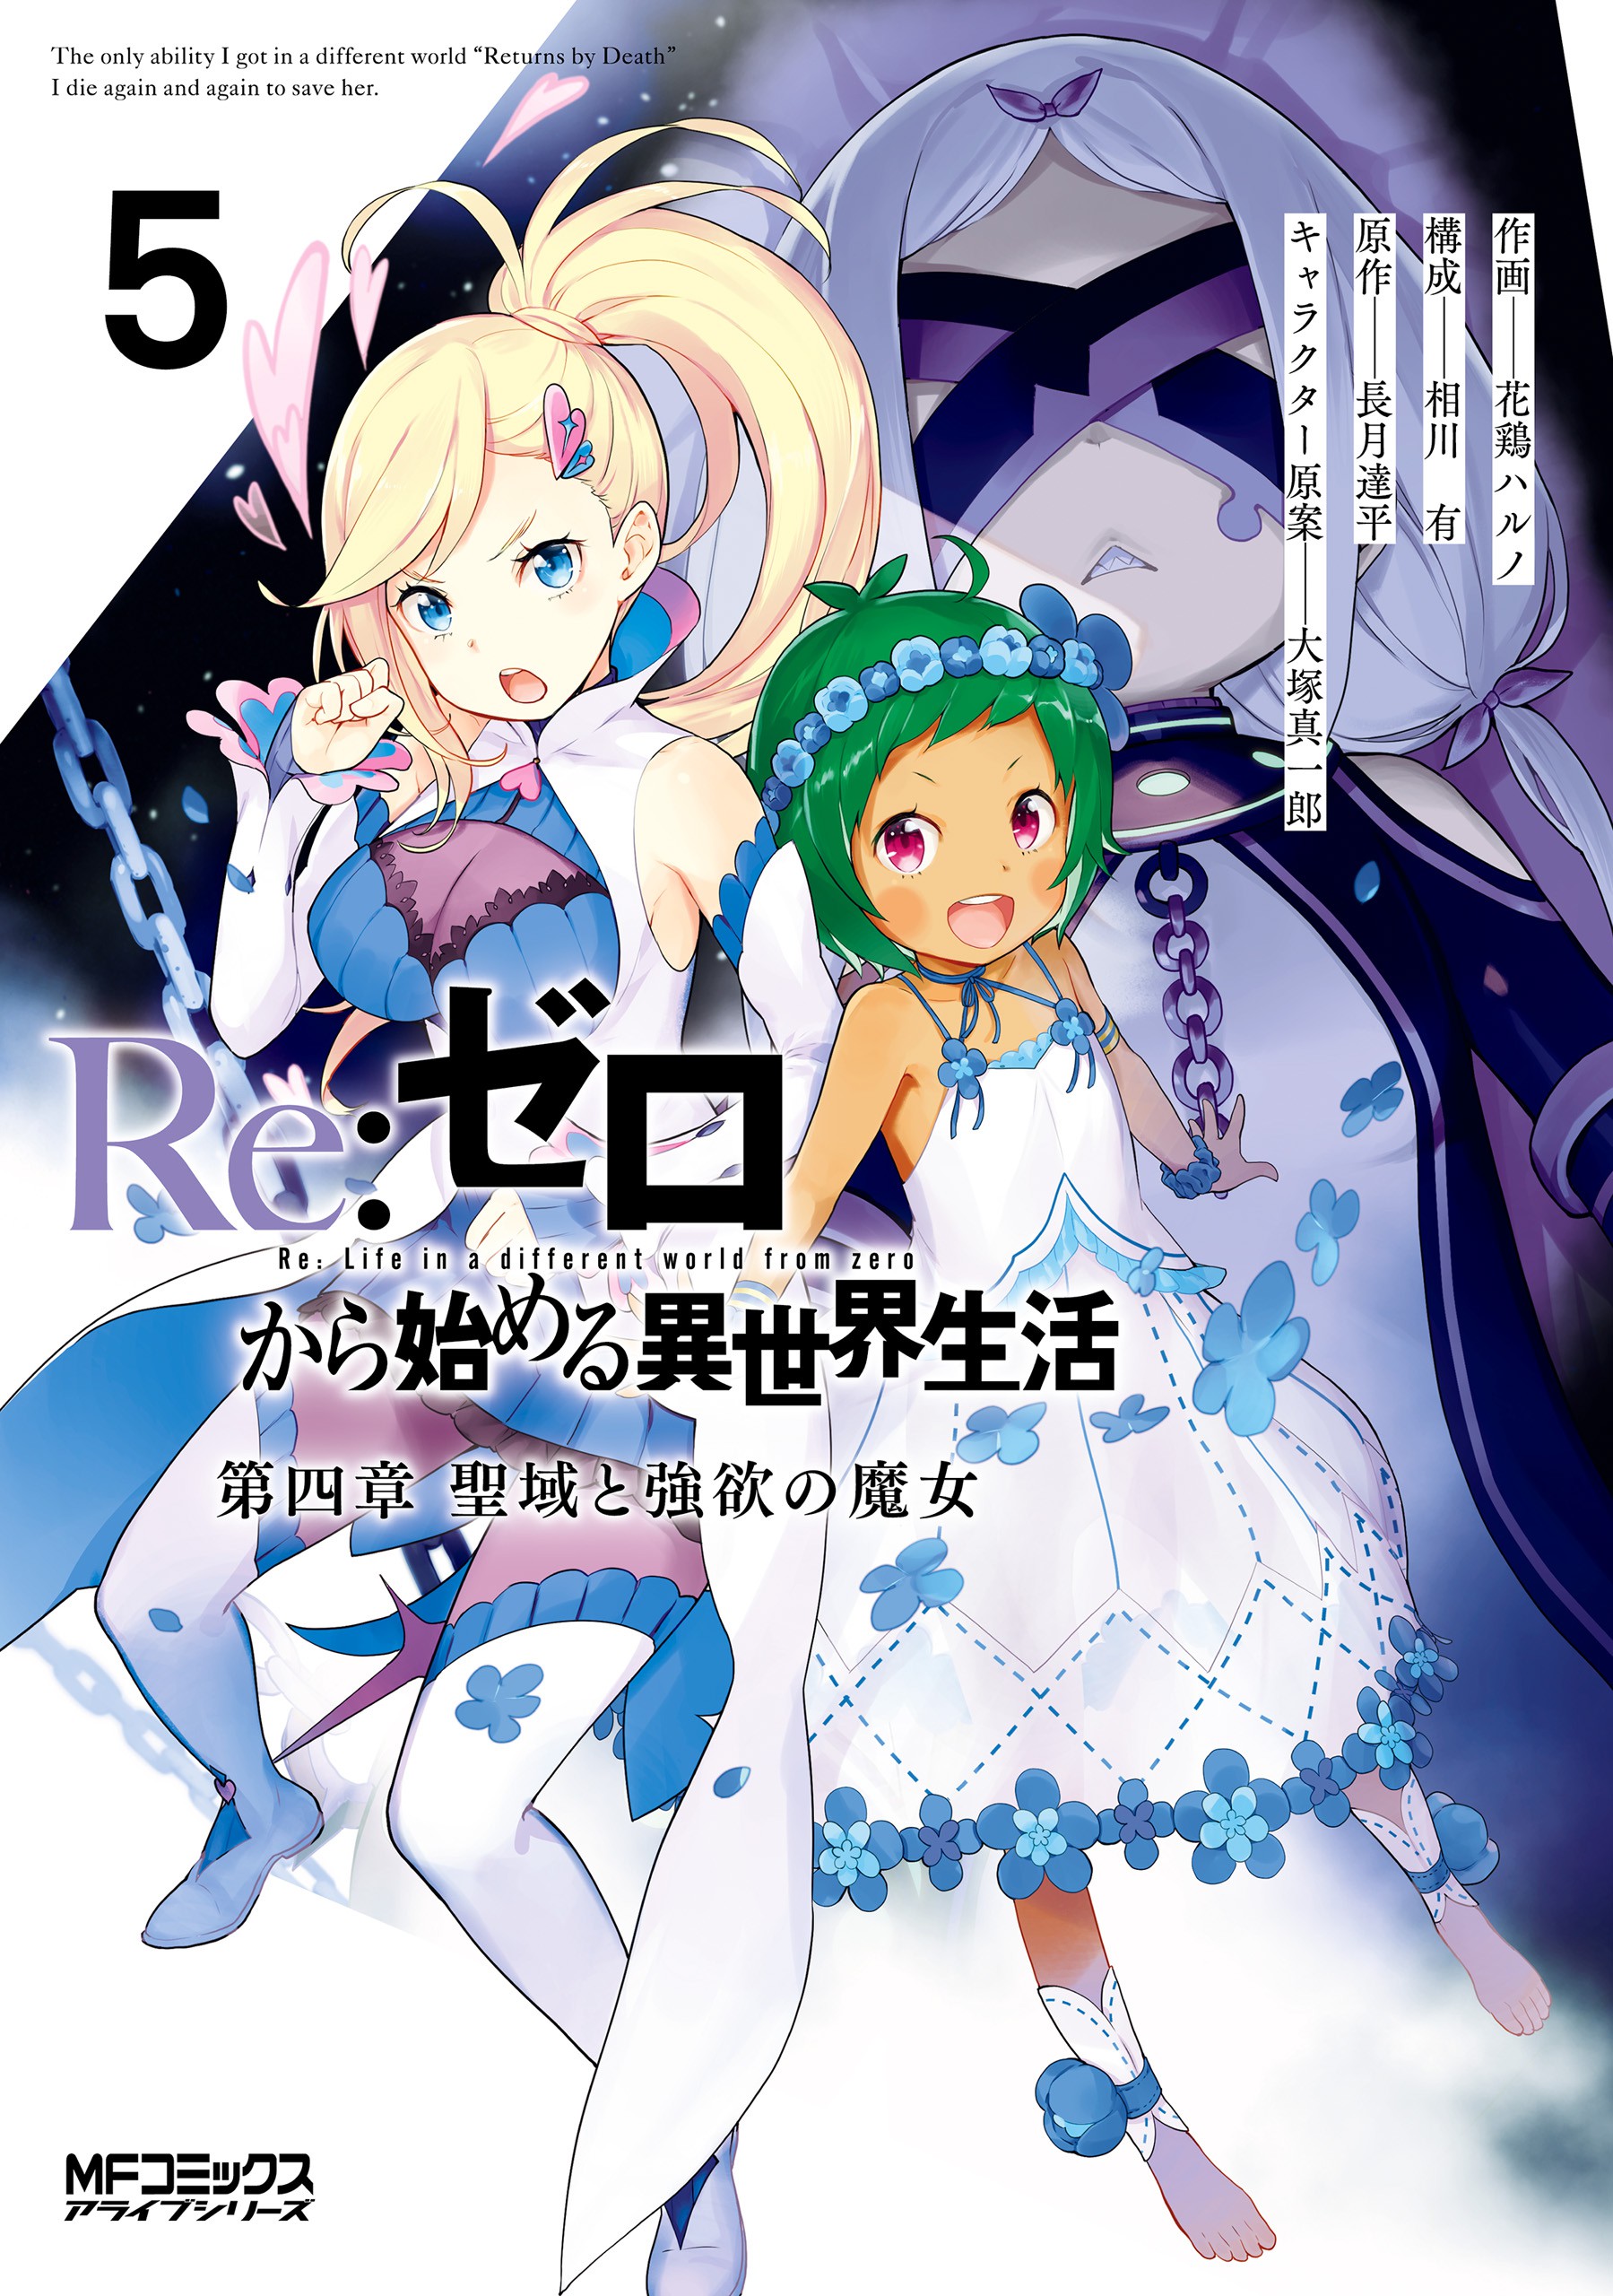 Anime AC ( shungokusatsu ) - Re:Zero kara Hajimeru Isekai Seikatsu